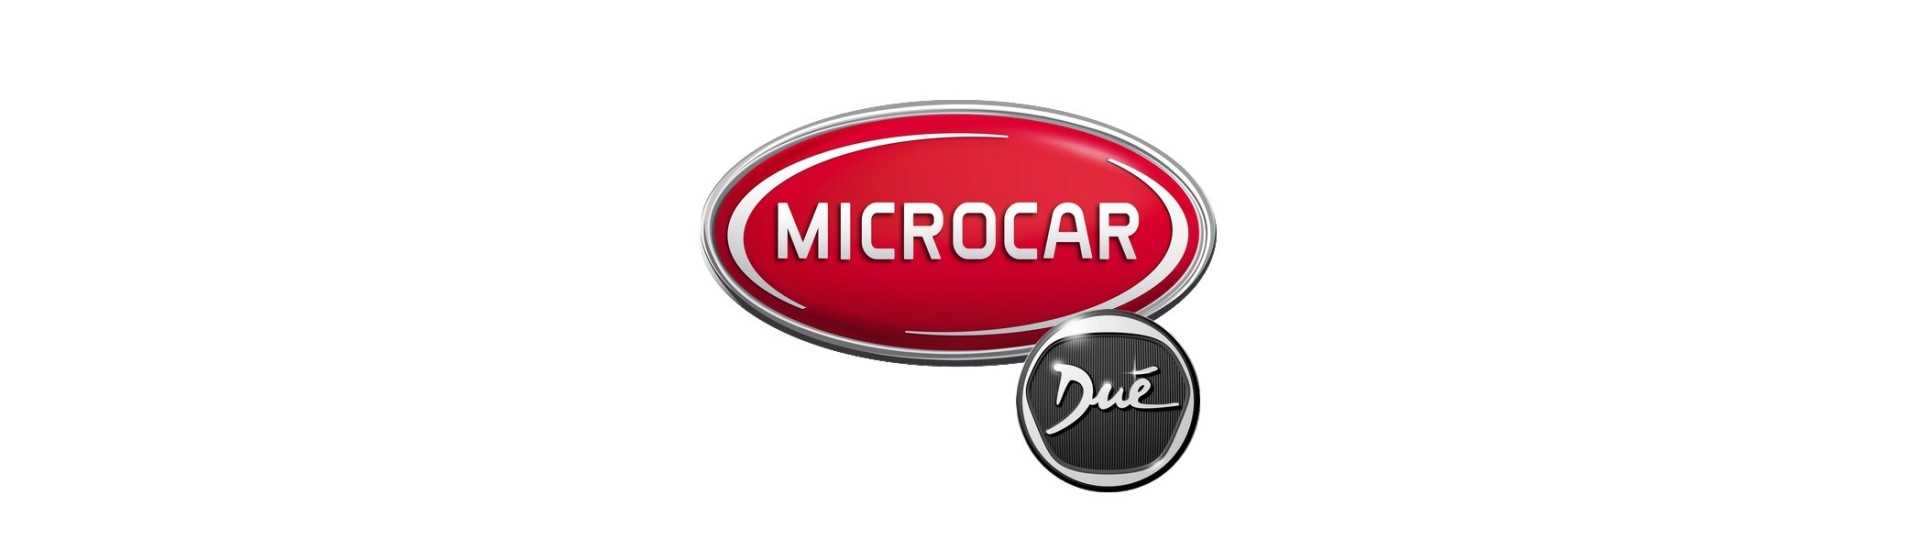 Suspensionsbrüche zum besten Preis Auto ohne Lizenz Microcar Dué